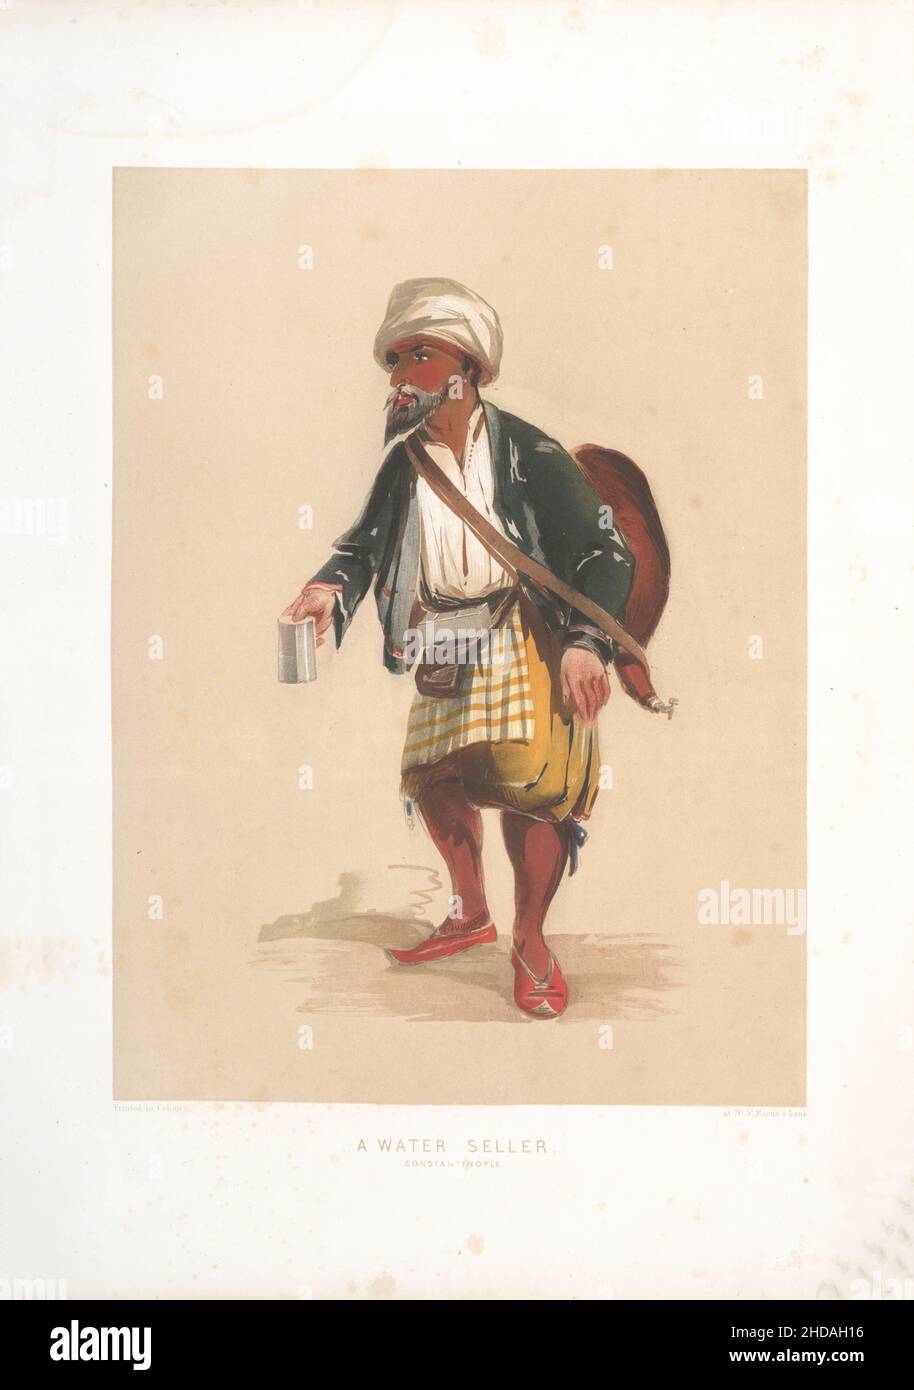 Litografía a color vintage del Imperio Otomano: El vendedor de agua, Constantinopla 1854, por Forbes Mac Bean (artista) y Justin Sutcliffe (litógrafo) Foto de stock